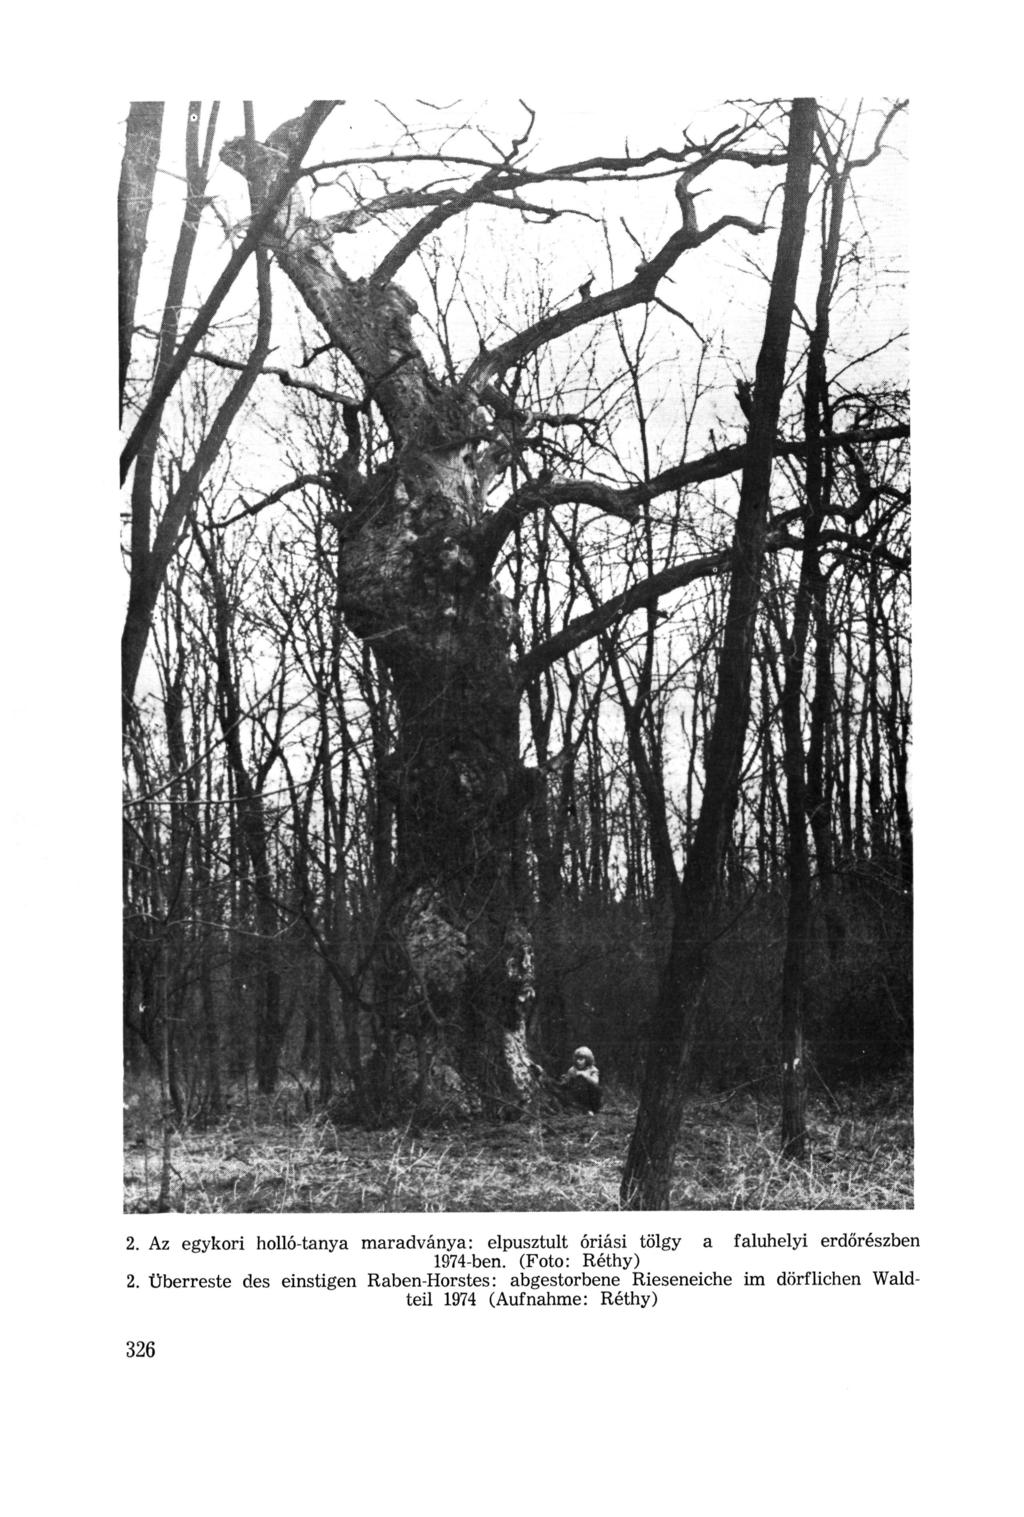 2. Az egykori holló-tanya maradványa: elpusztult óriási tölgy a faluhelyi erdőrészben 1974-ben. (Foto: Réthy) 2.